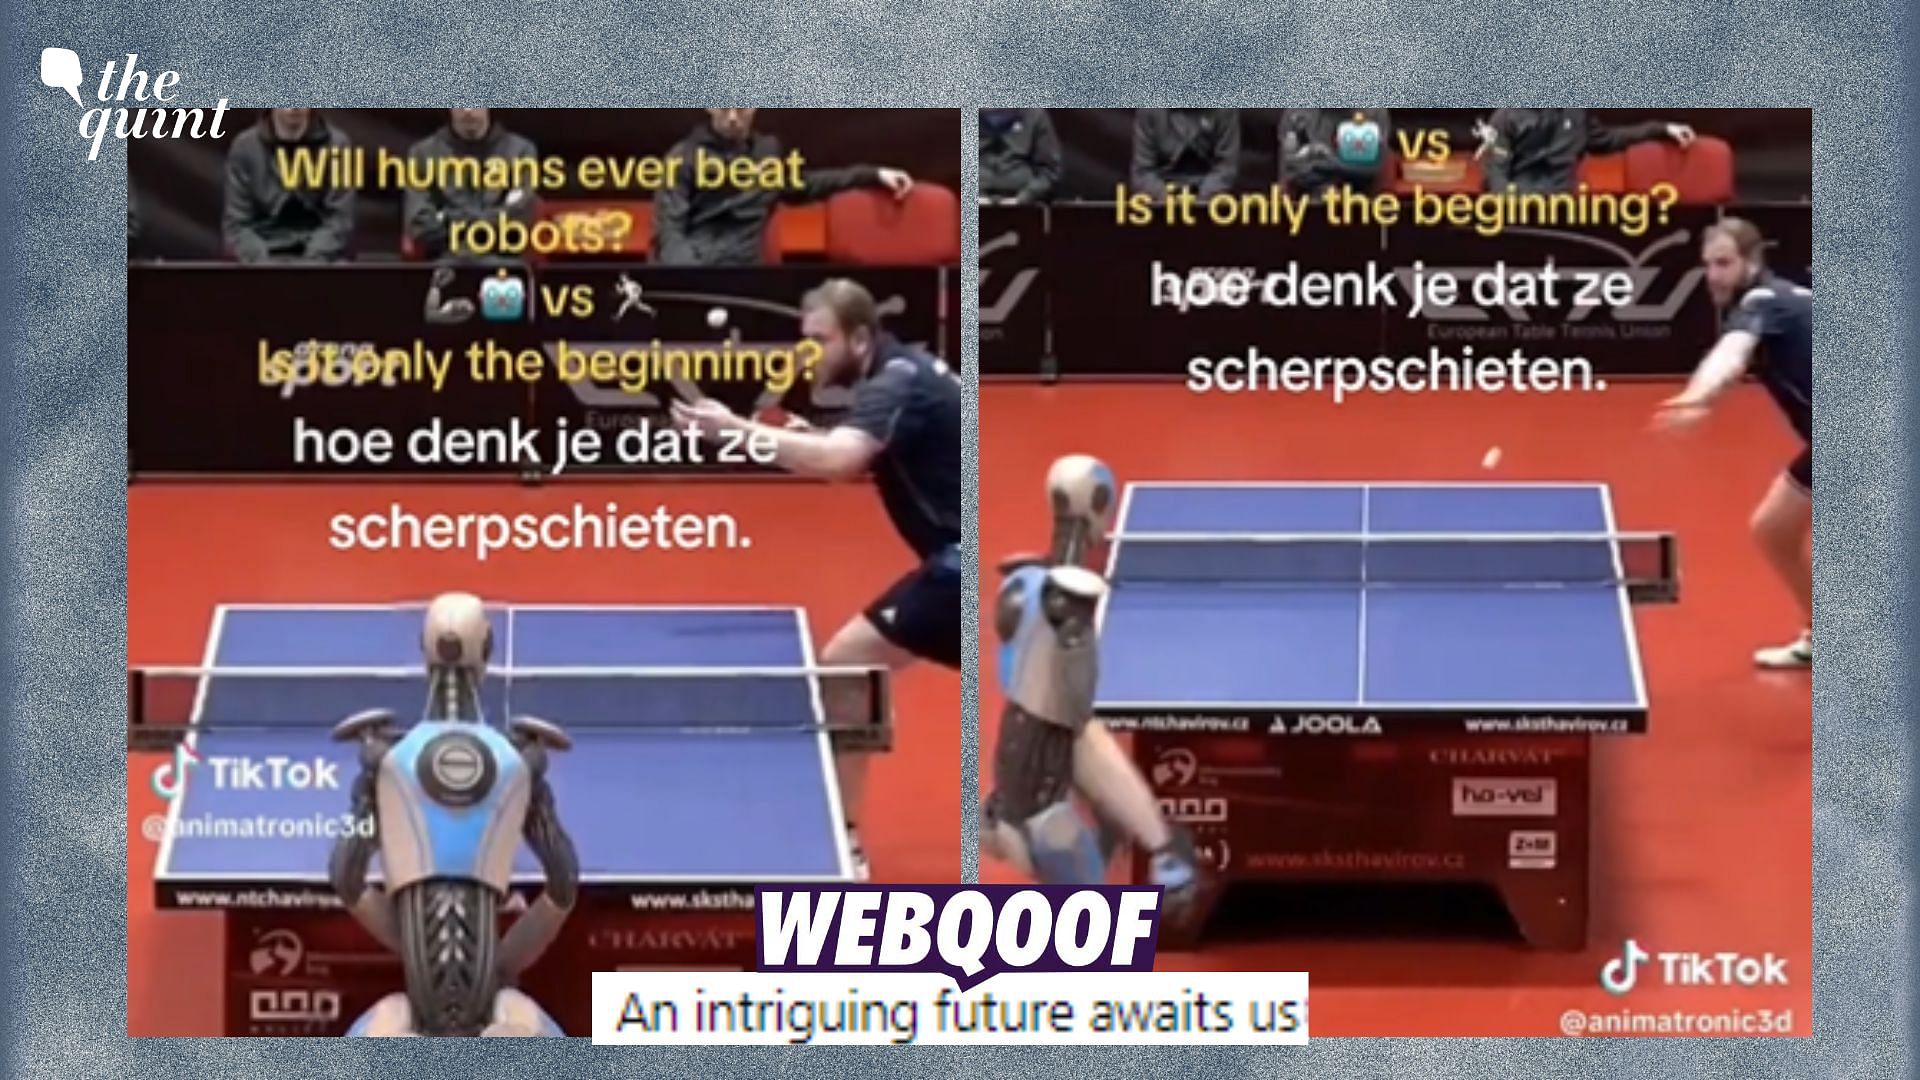 Un robot bat un humain au Ping-Pong ? La vidéo aux 45 millions de